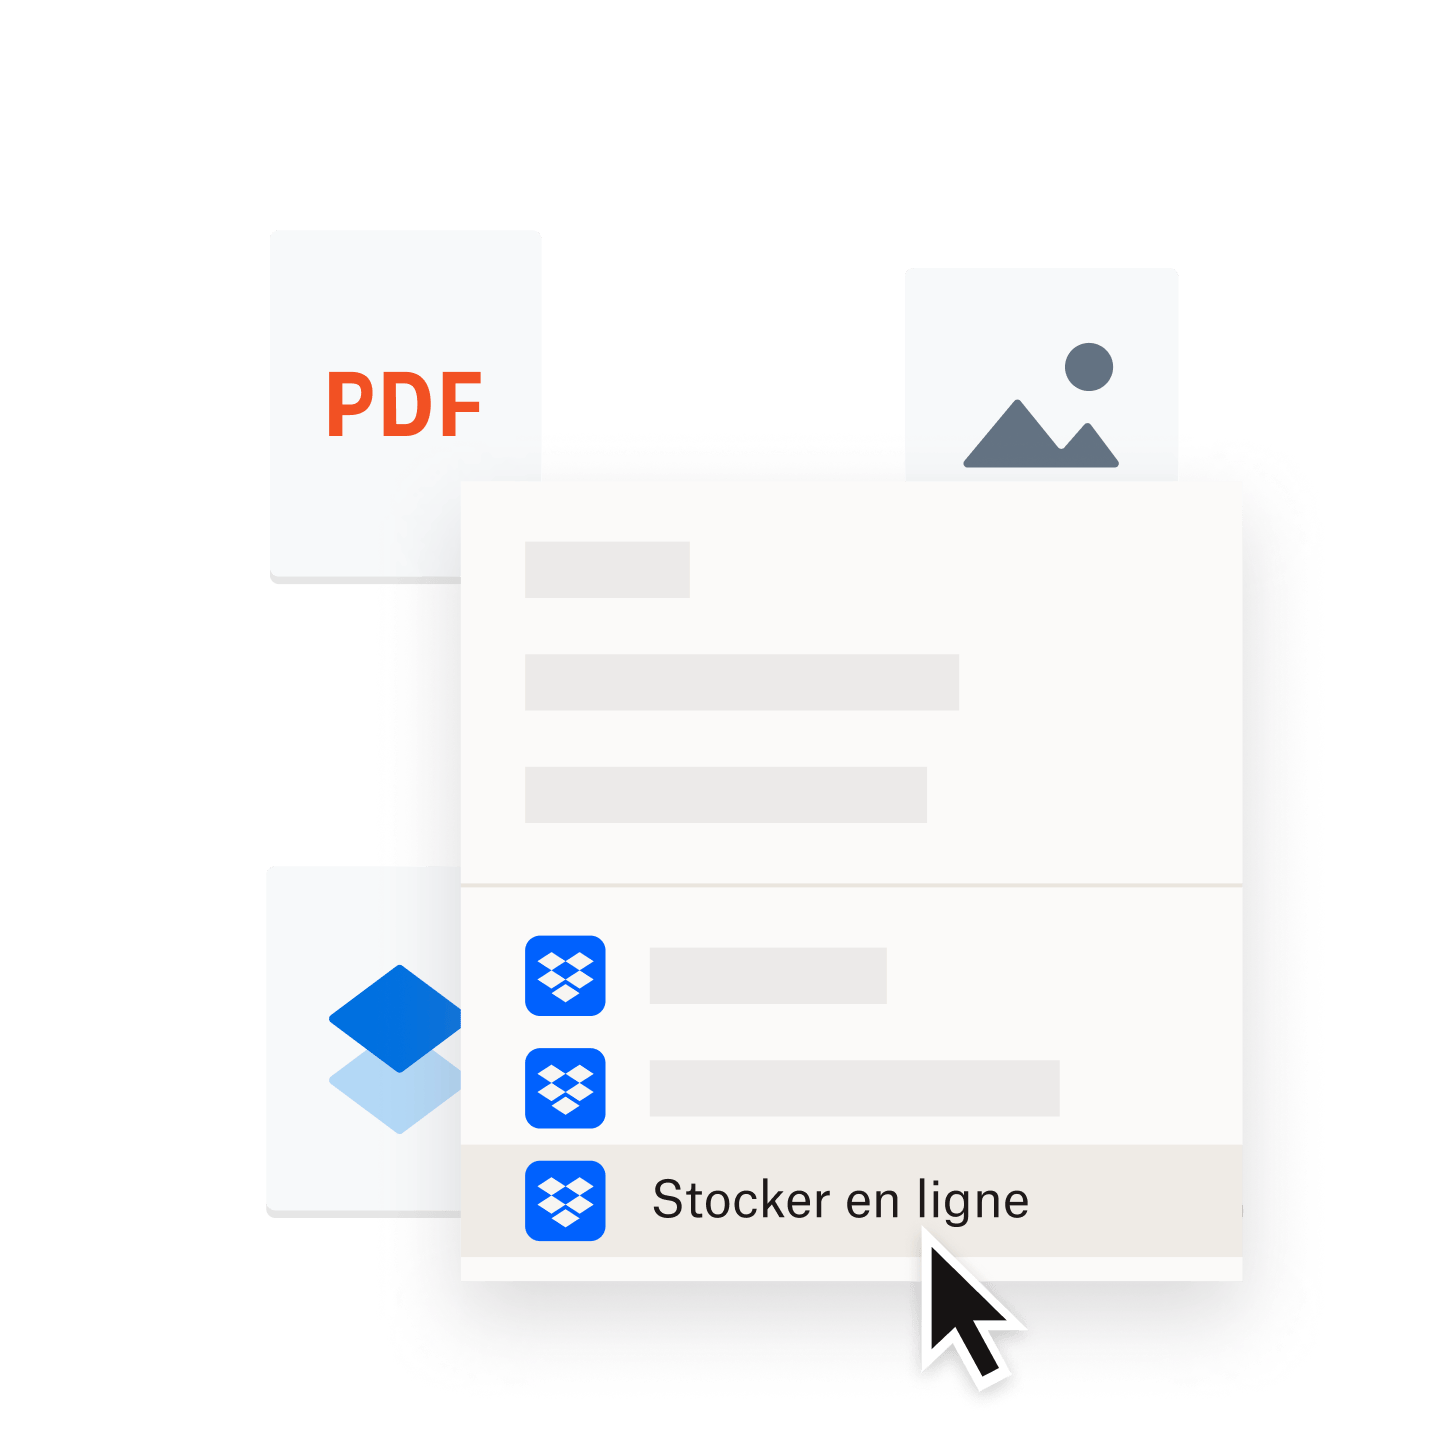 Fichier PDF enregistré dans un dossier Dropbox en cours de stockage en ligne